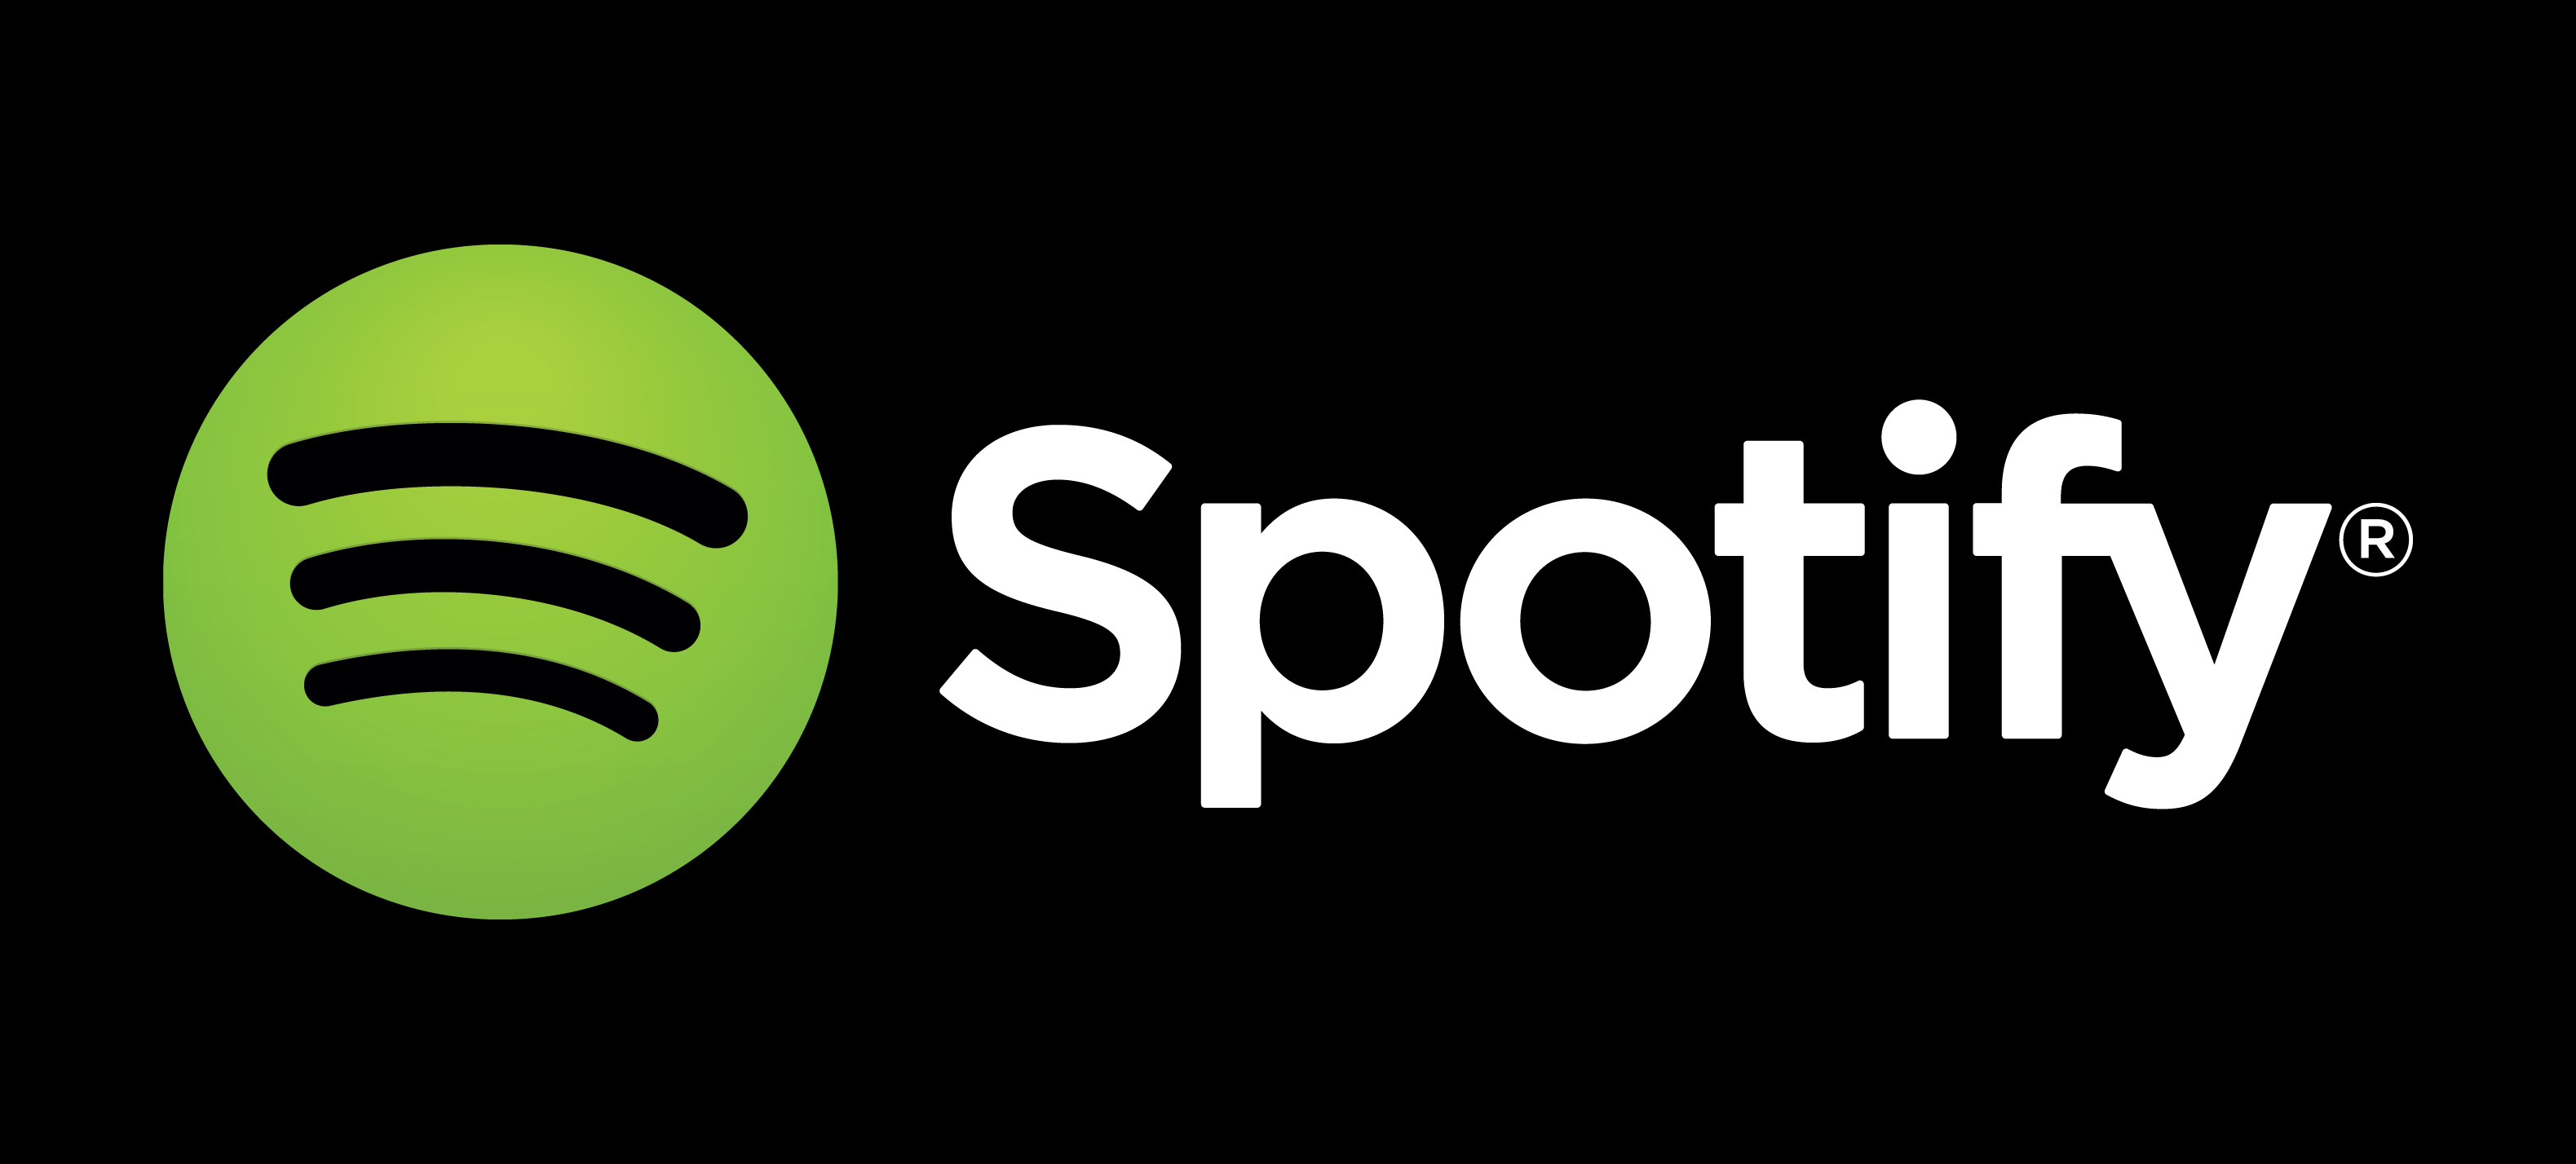 音楽聴き放題 Spotify への対応開始